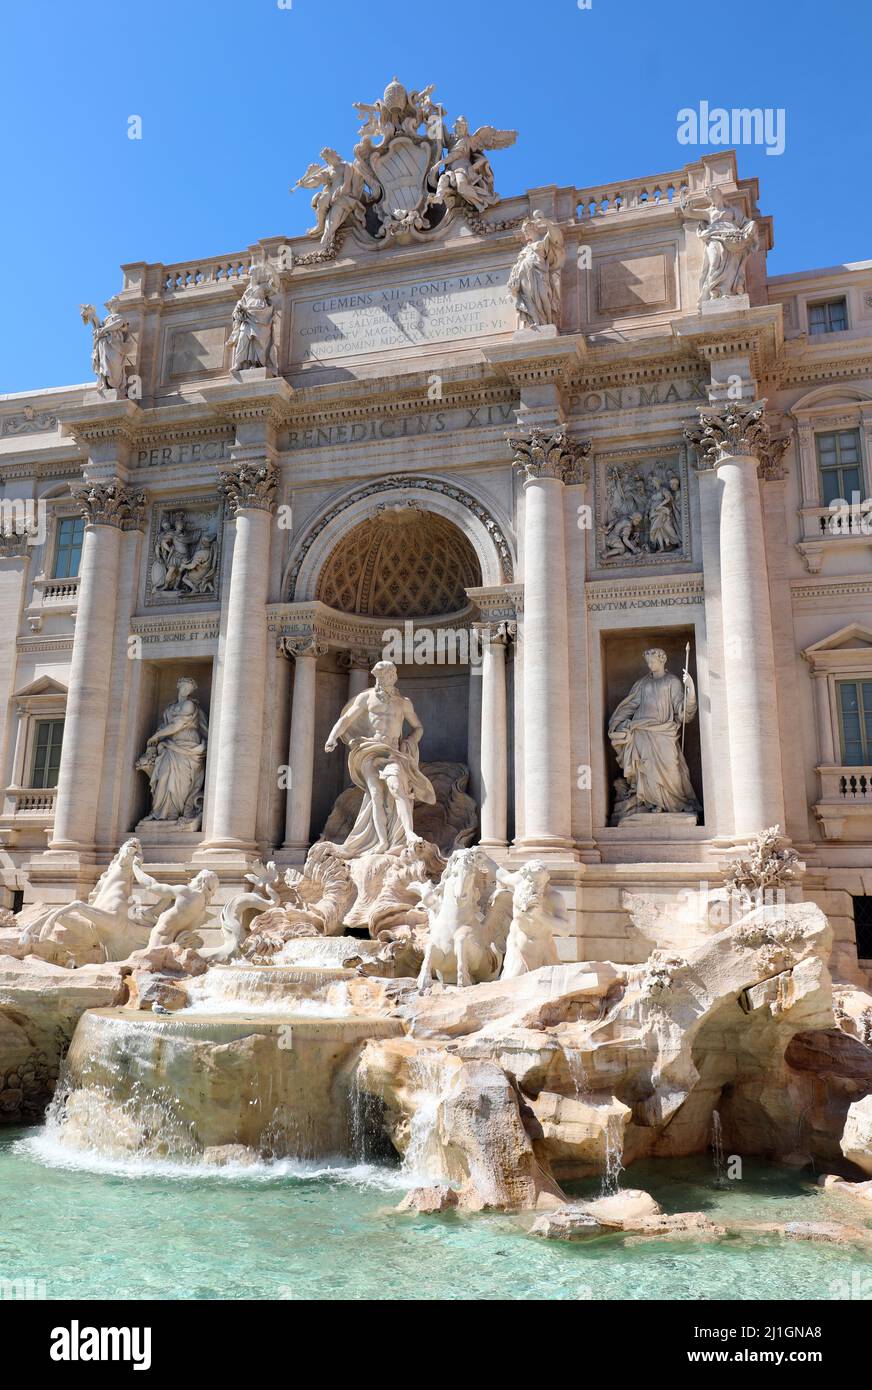 Célèbre fontaine de Trevi avec la statue du Dieu Neptune dans la ville de Rome capitale de l'Italie Banque D'Images